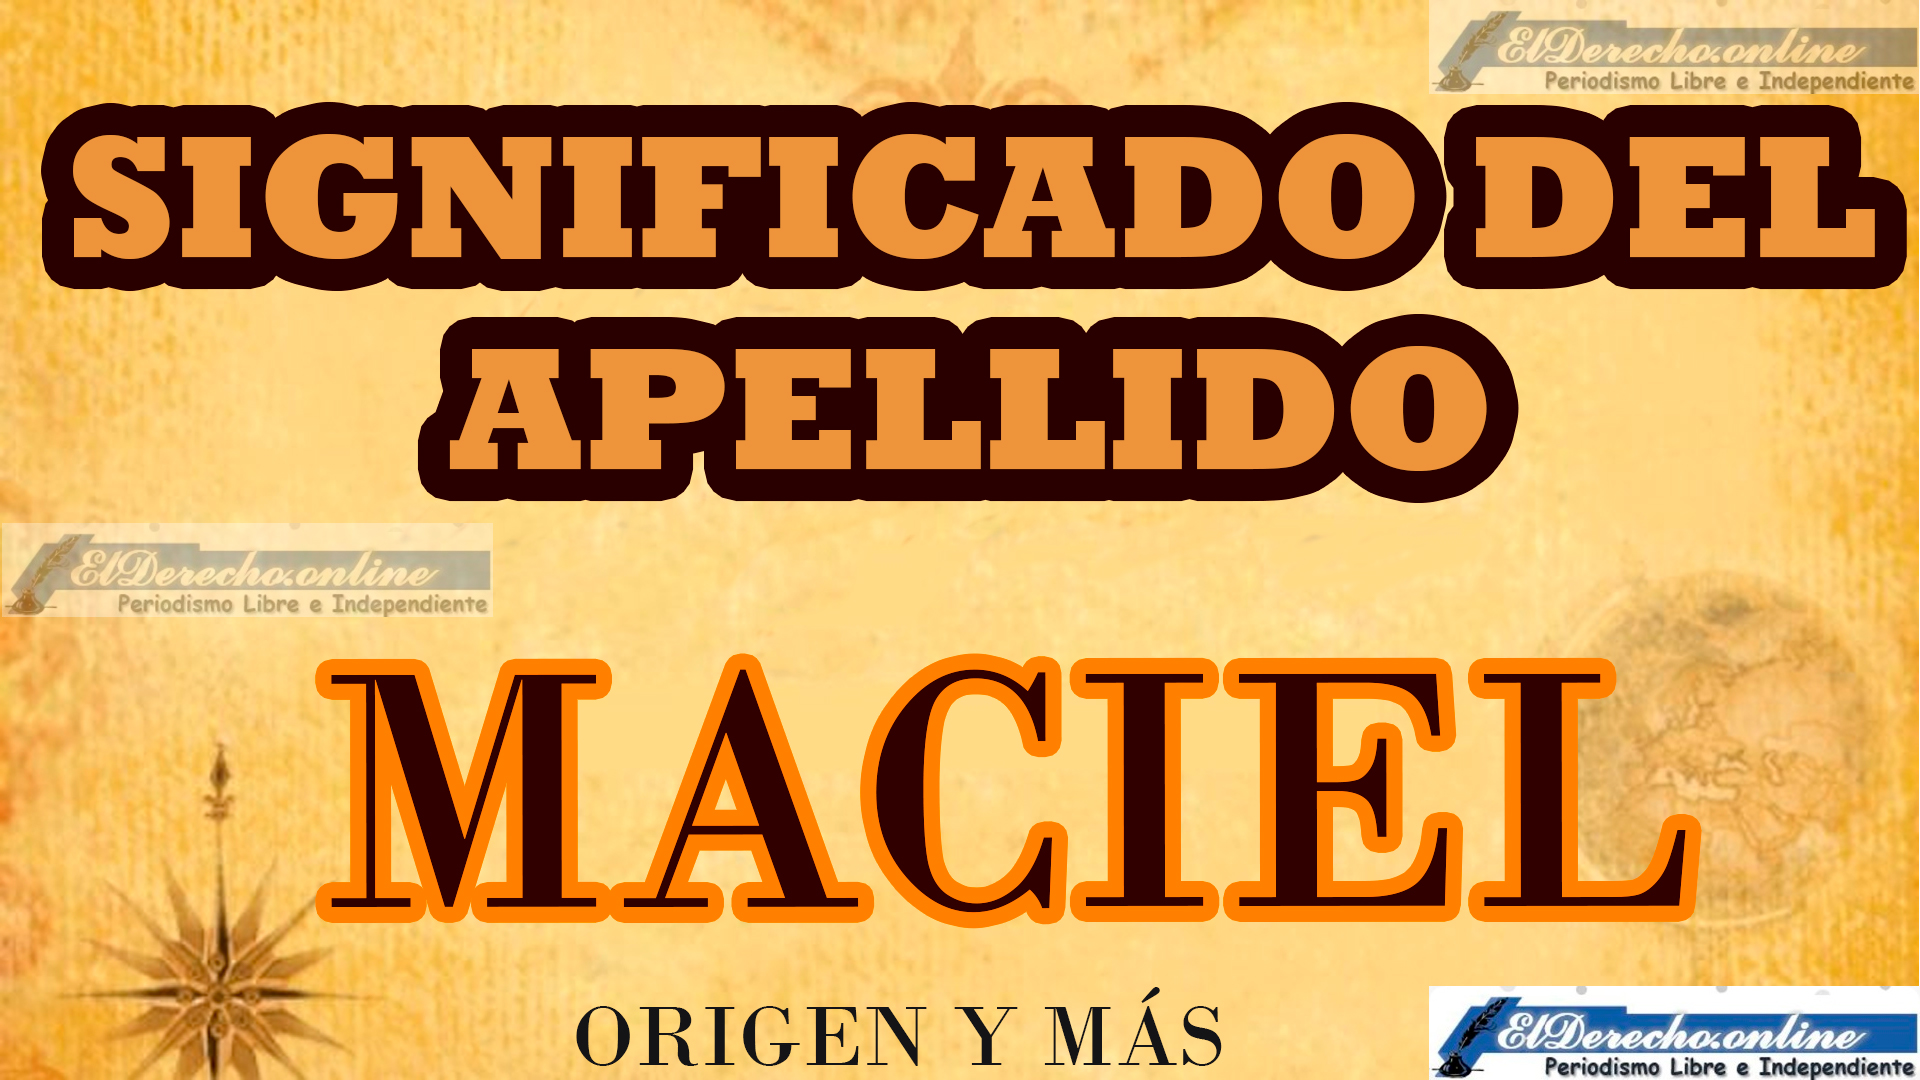 Significado del apellido Maciel, Origen y más